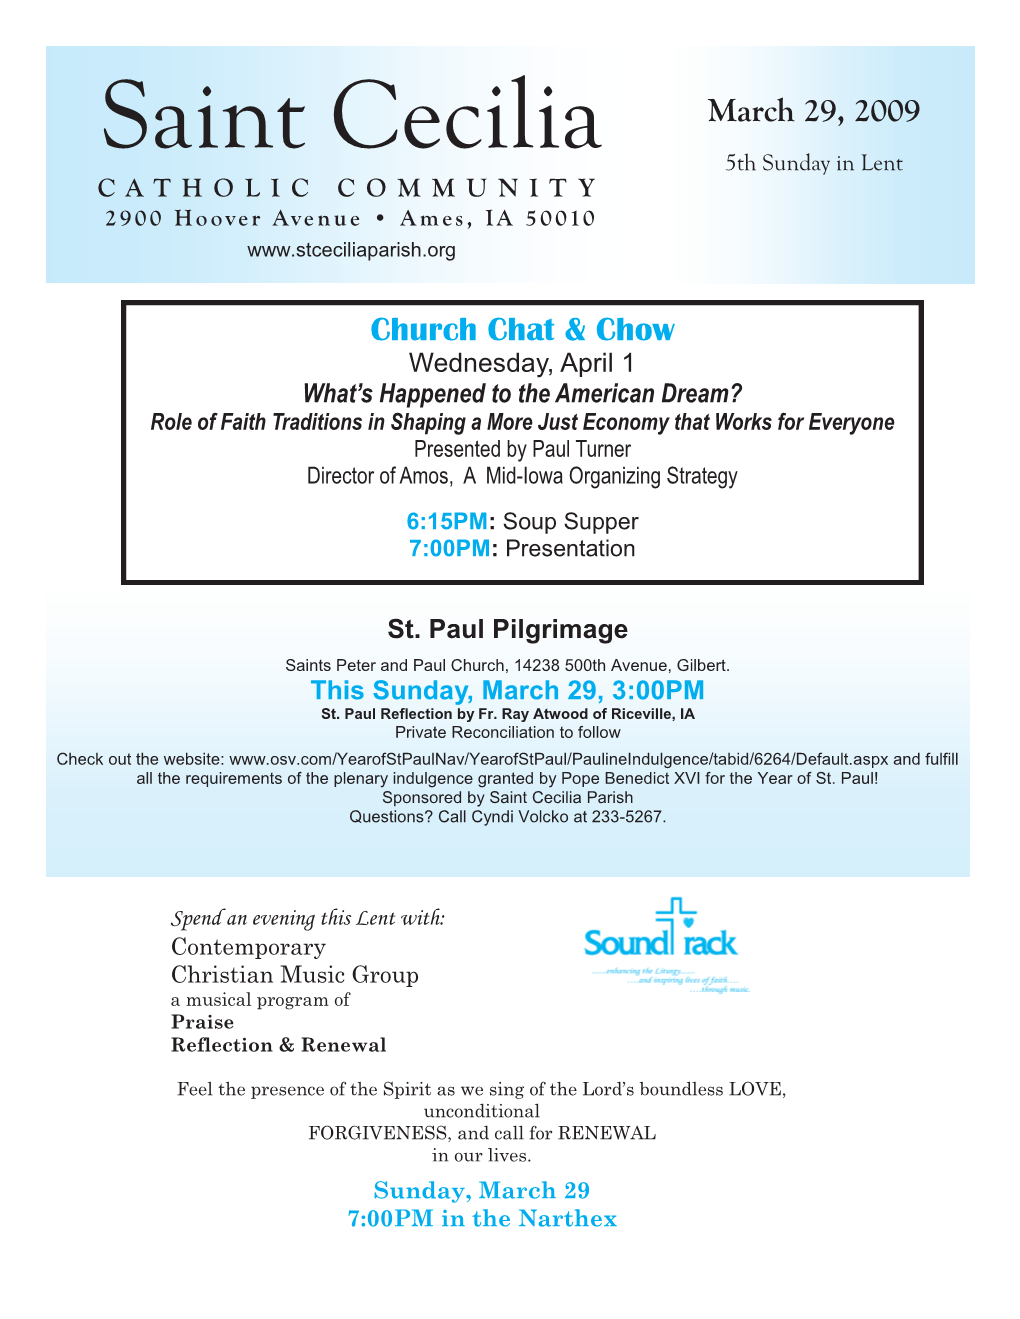 Saint Cecilia 5Th Sunday in Lent CATHOLIC COMMUNITY 2900 Hoover Avenue • Ames, IA 50010